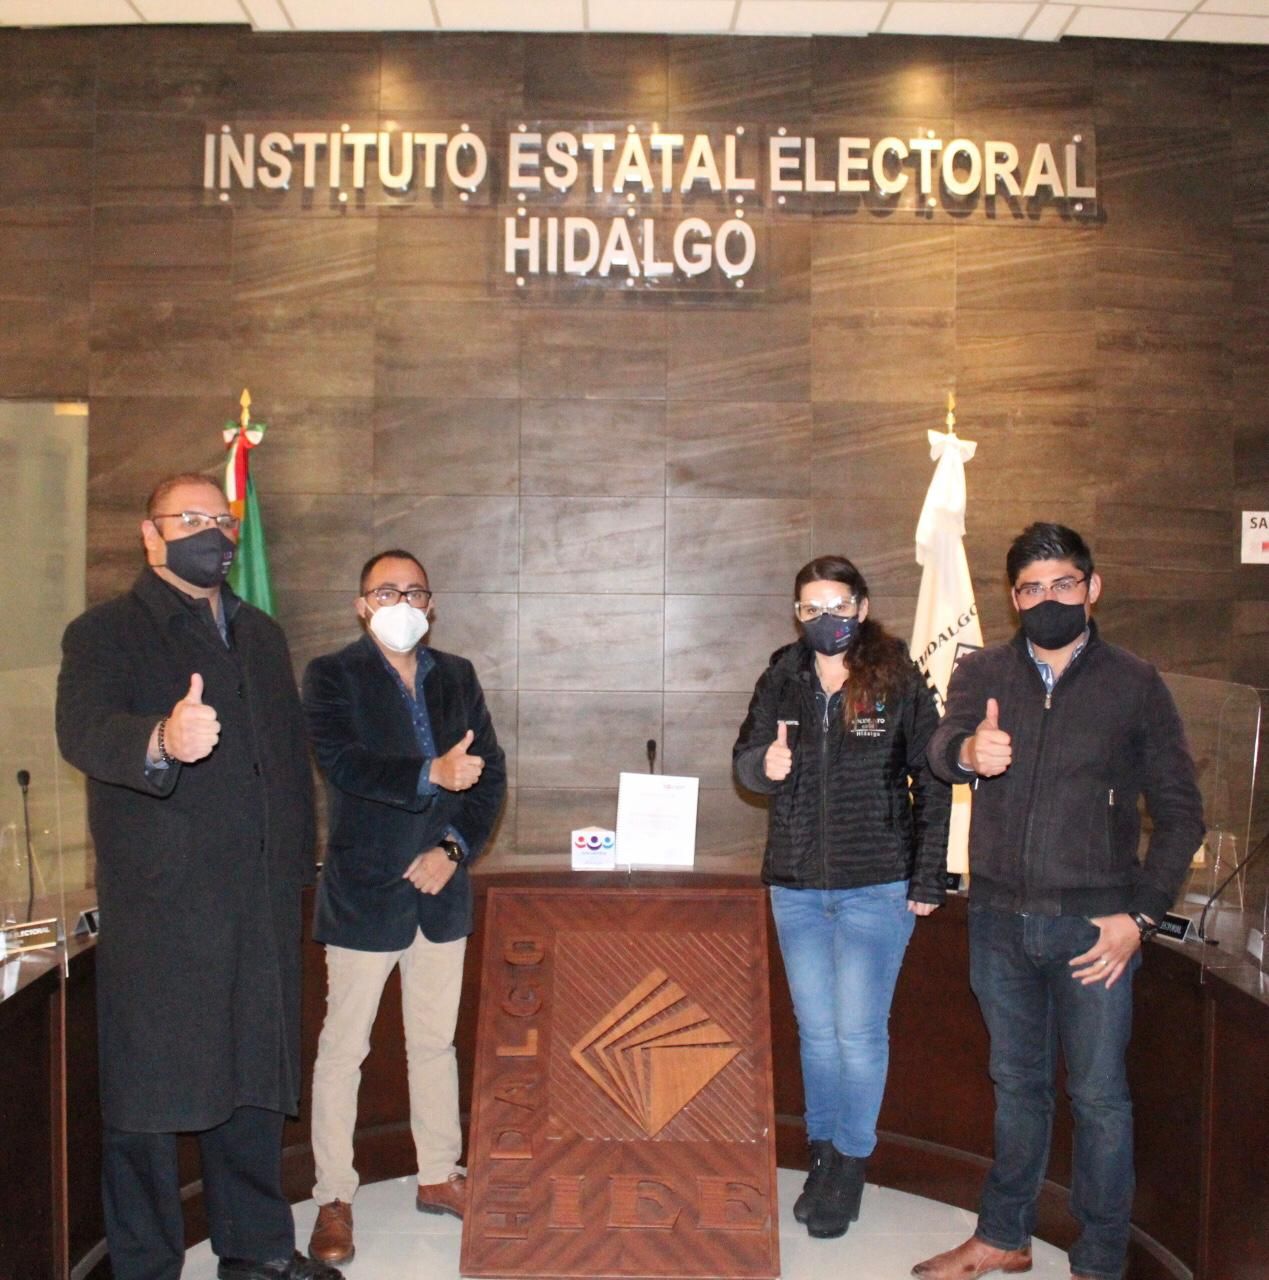 Encuentro Social Hidalgo entrega su Plataforma Electoral al IEEH